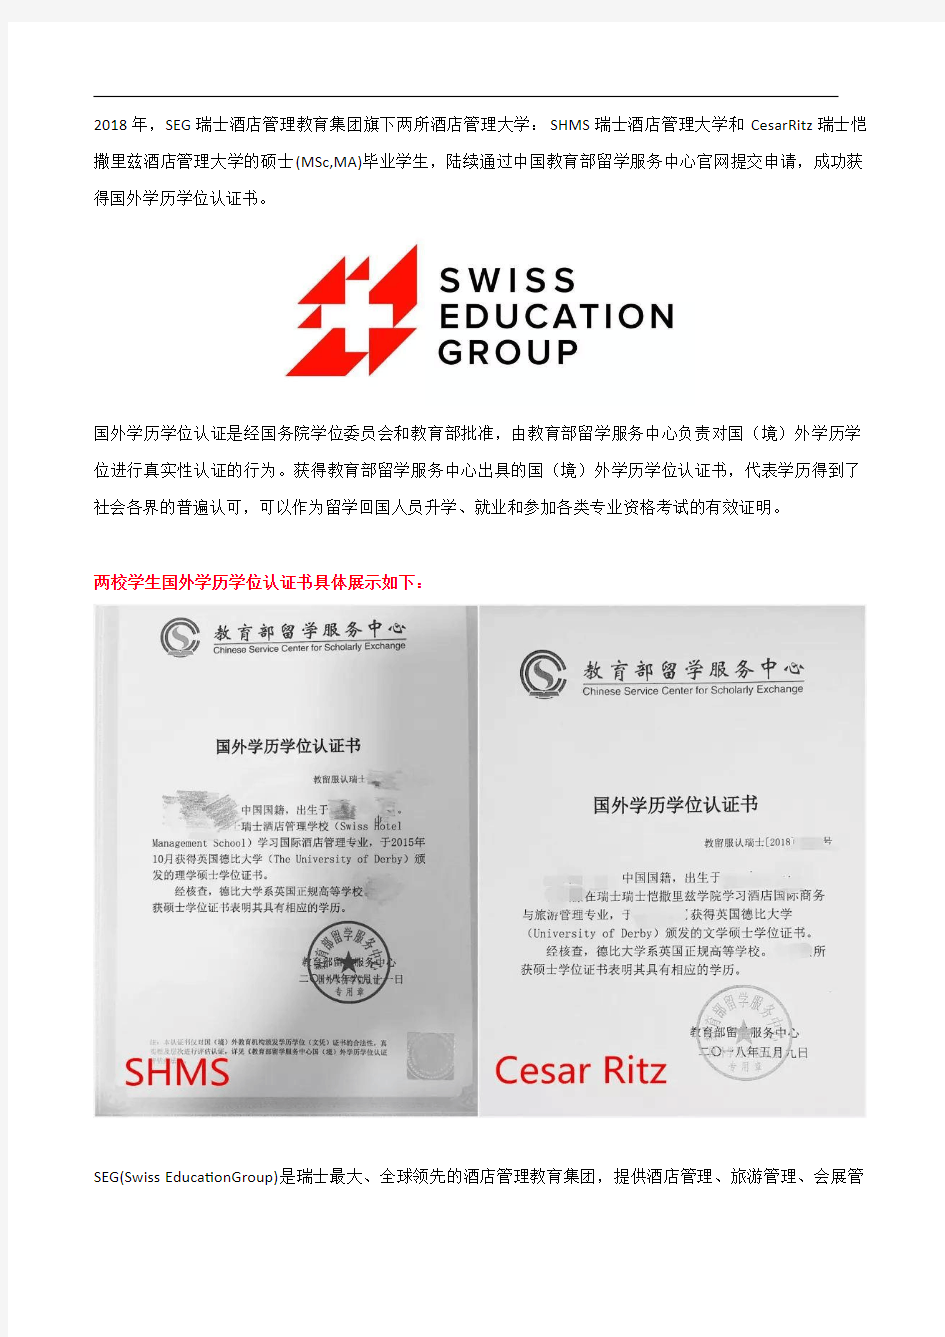 瑞士酒店管理大学学生获得中国教育部认证